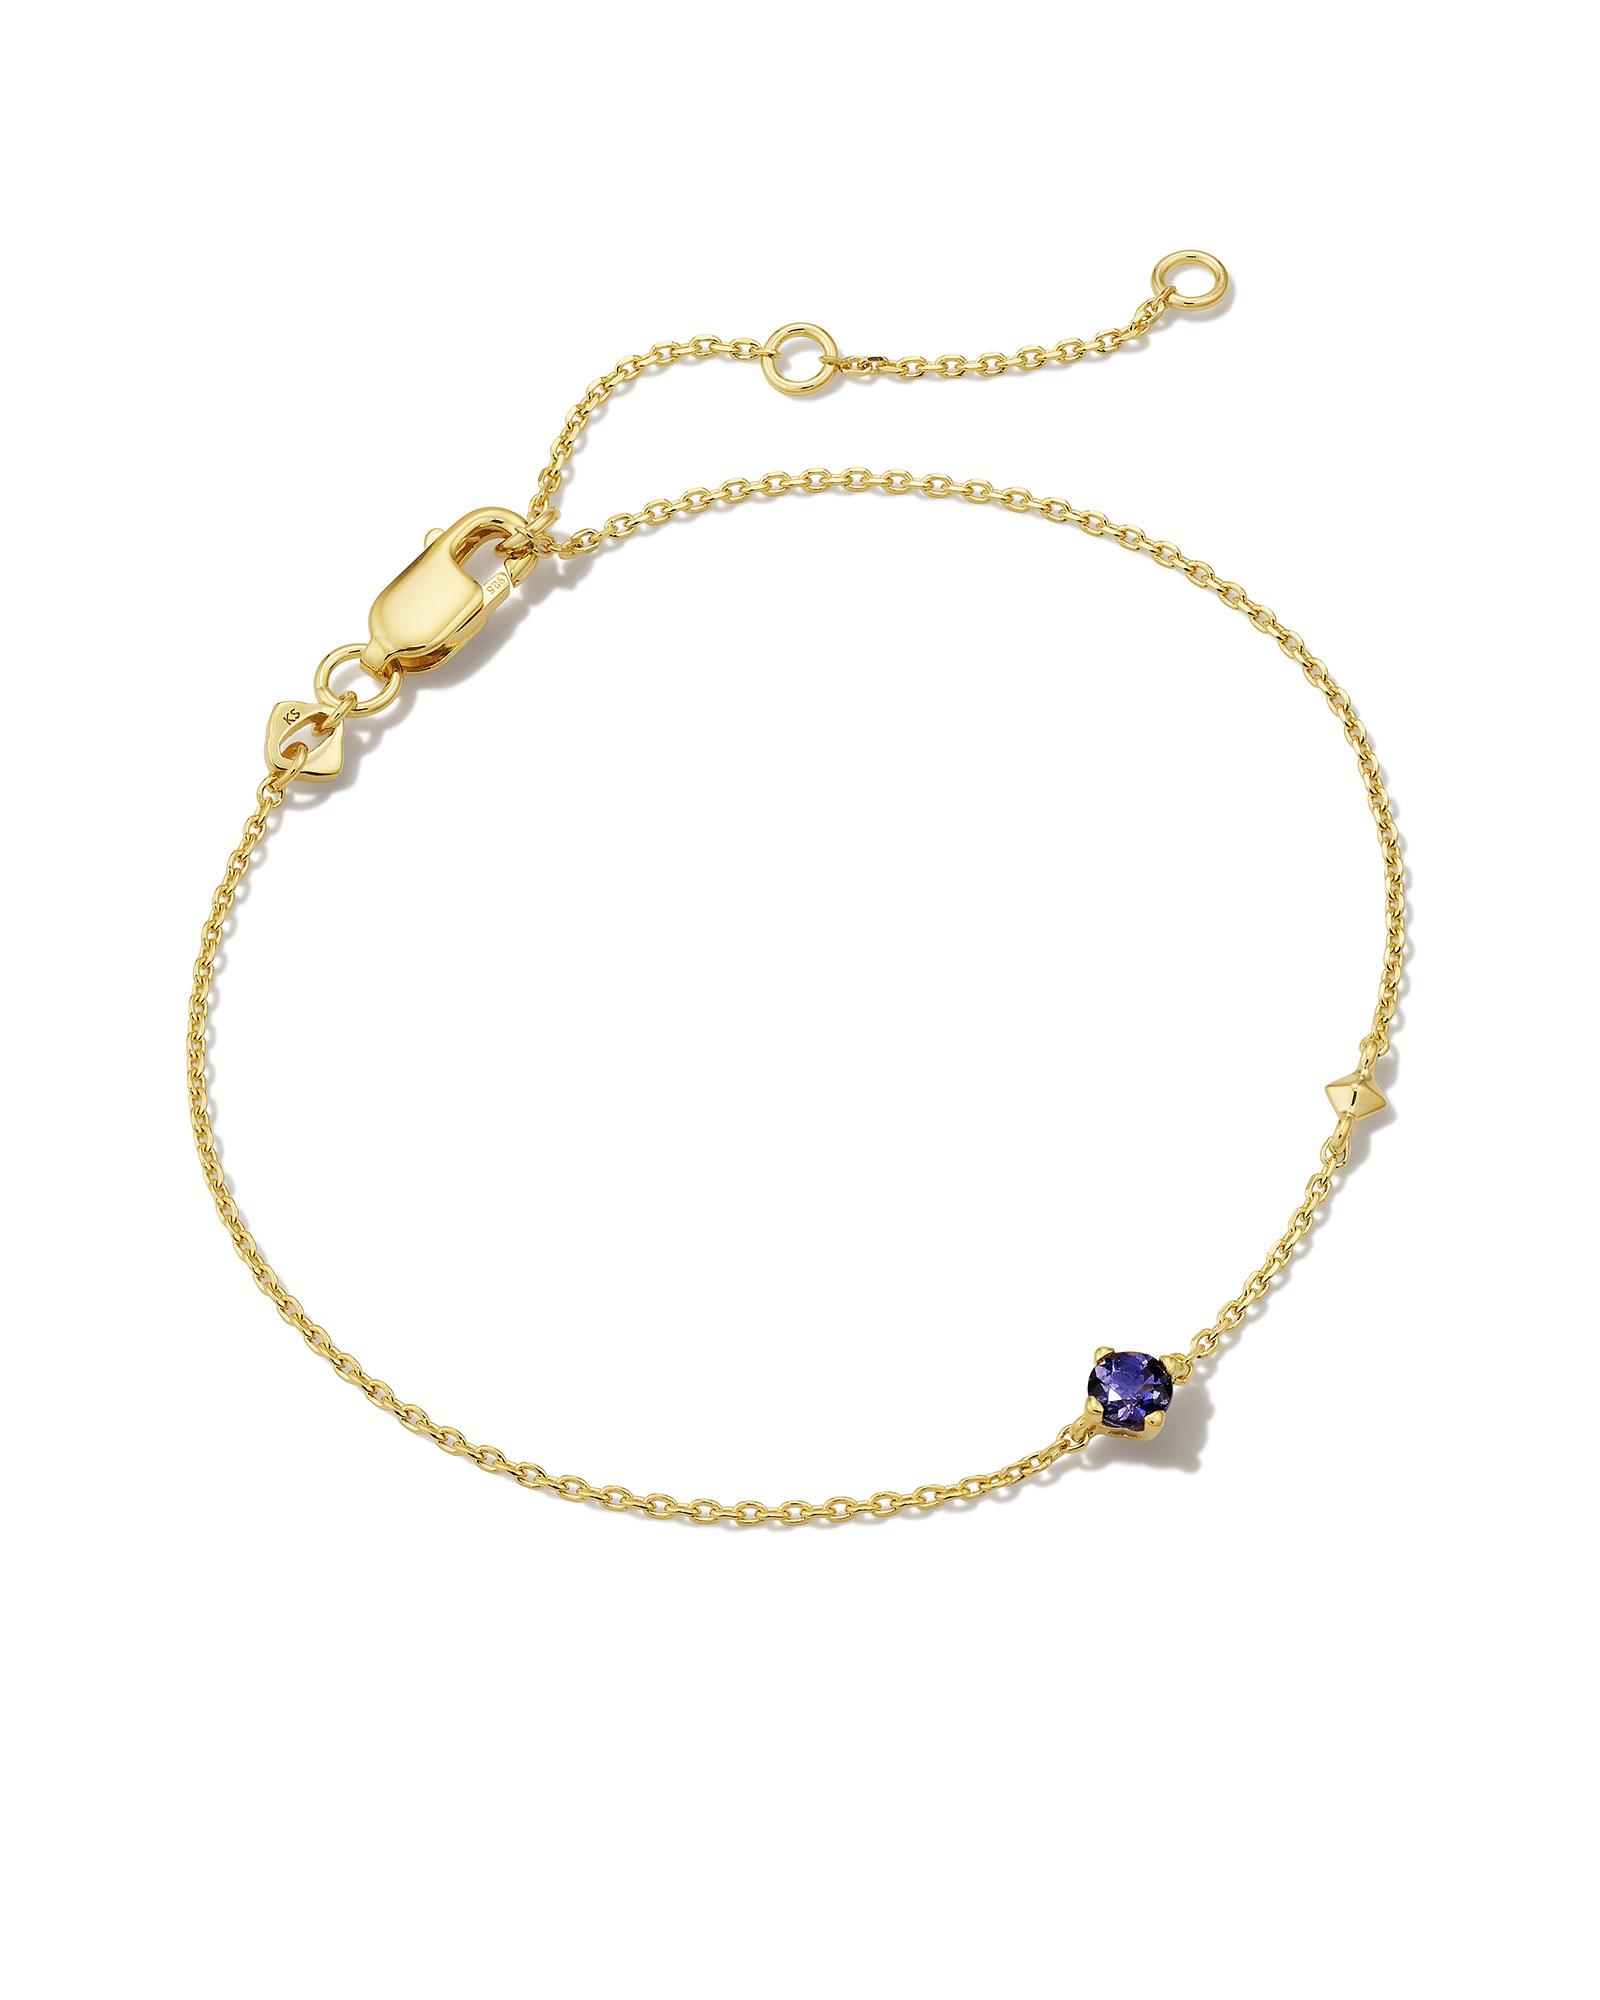 Maisie 18k Gold Vermeil Delicate Chain Bracelet in Blue Iolite